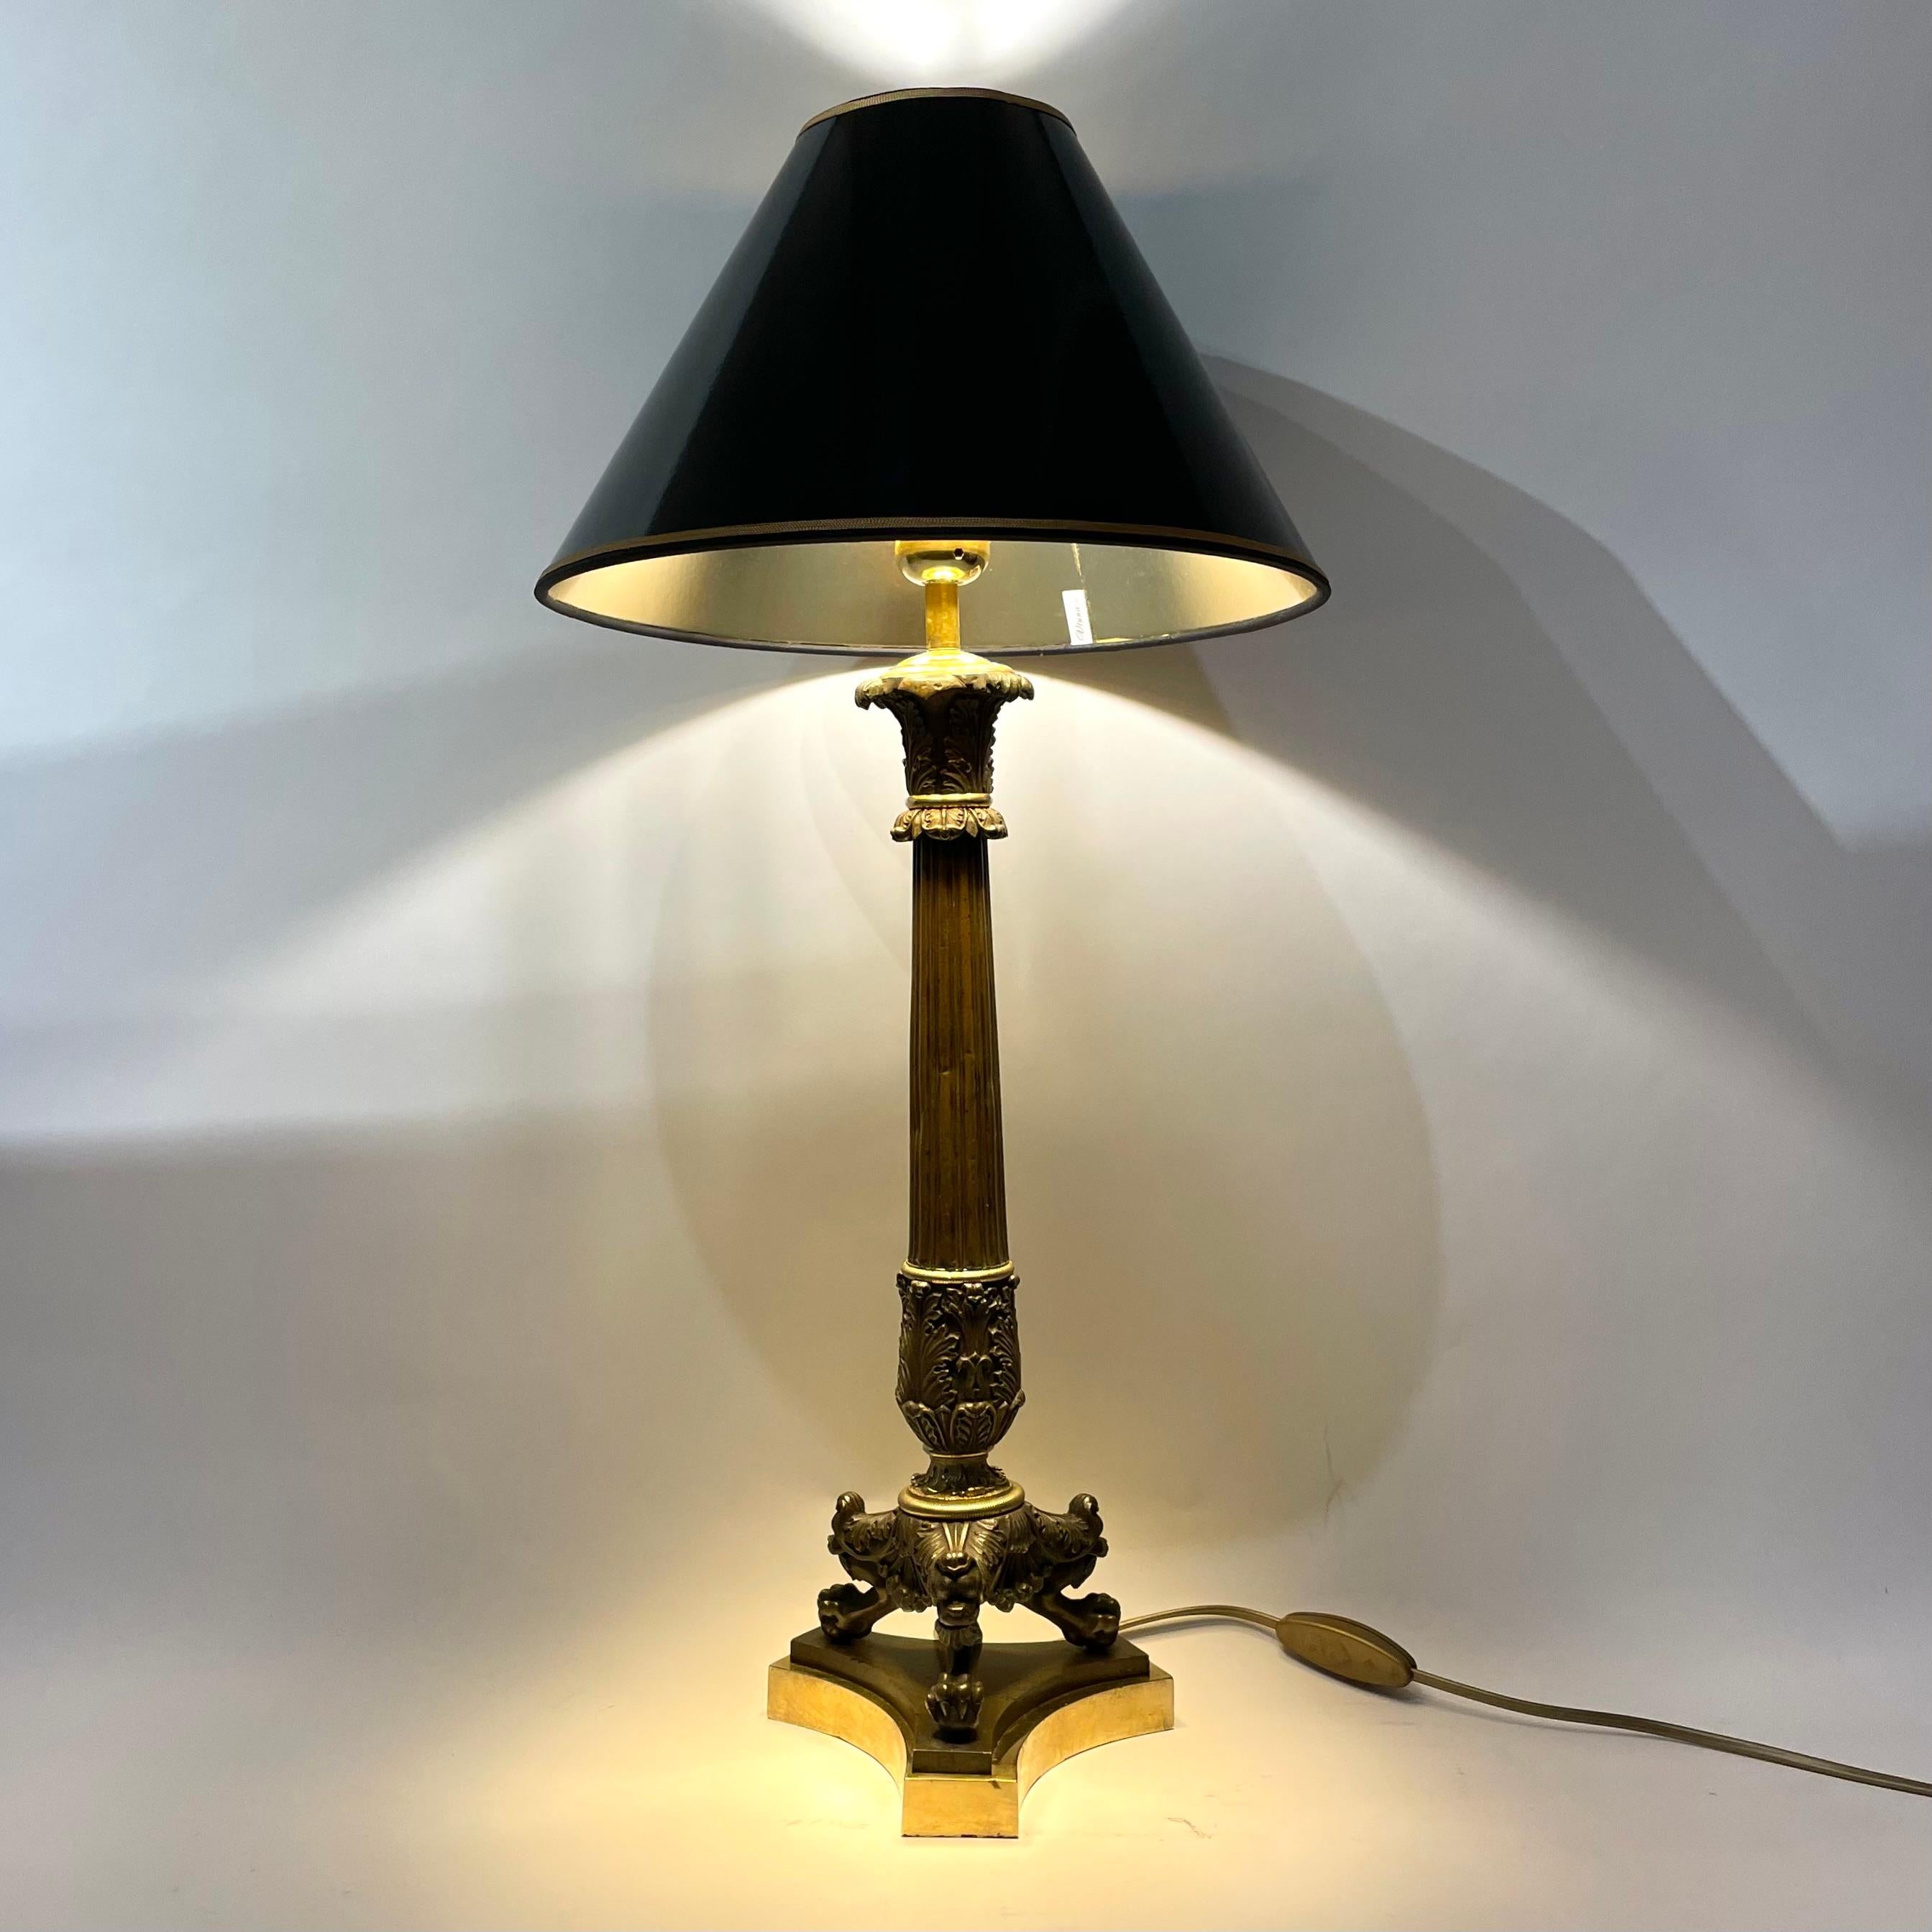 Elegante lampe de table en bronze doré et patiné foncé. Il s'agissait à l'origine d'un candélabre Empire des années 1820, transformé en lampe de table au début du 20e siècle.

L'abat-jour en laque noire avec un intérieur doré donne une lumière